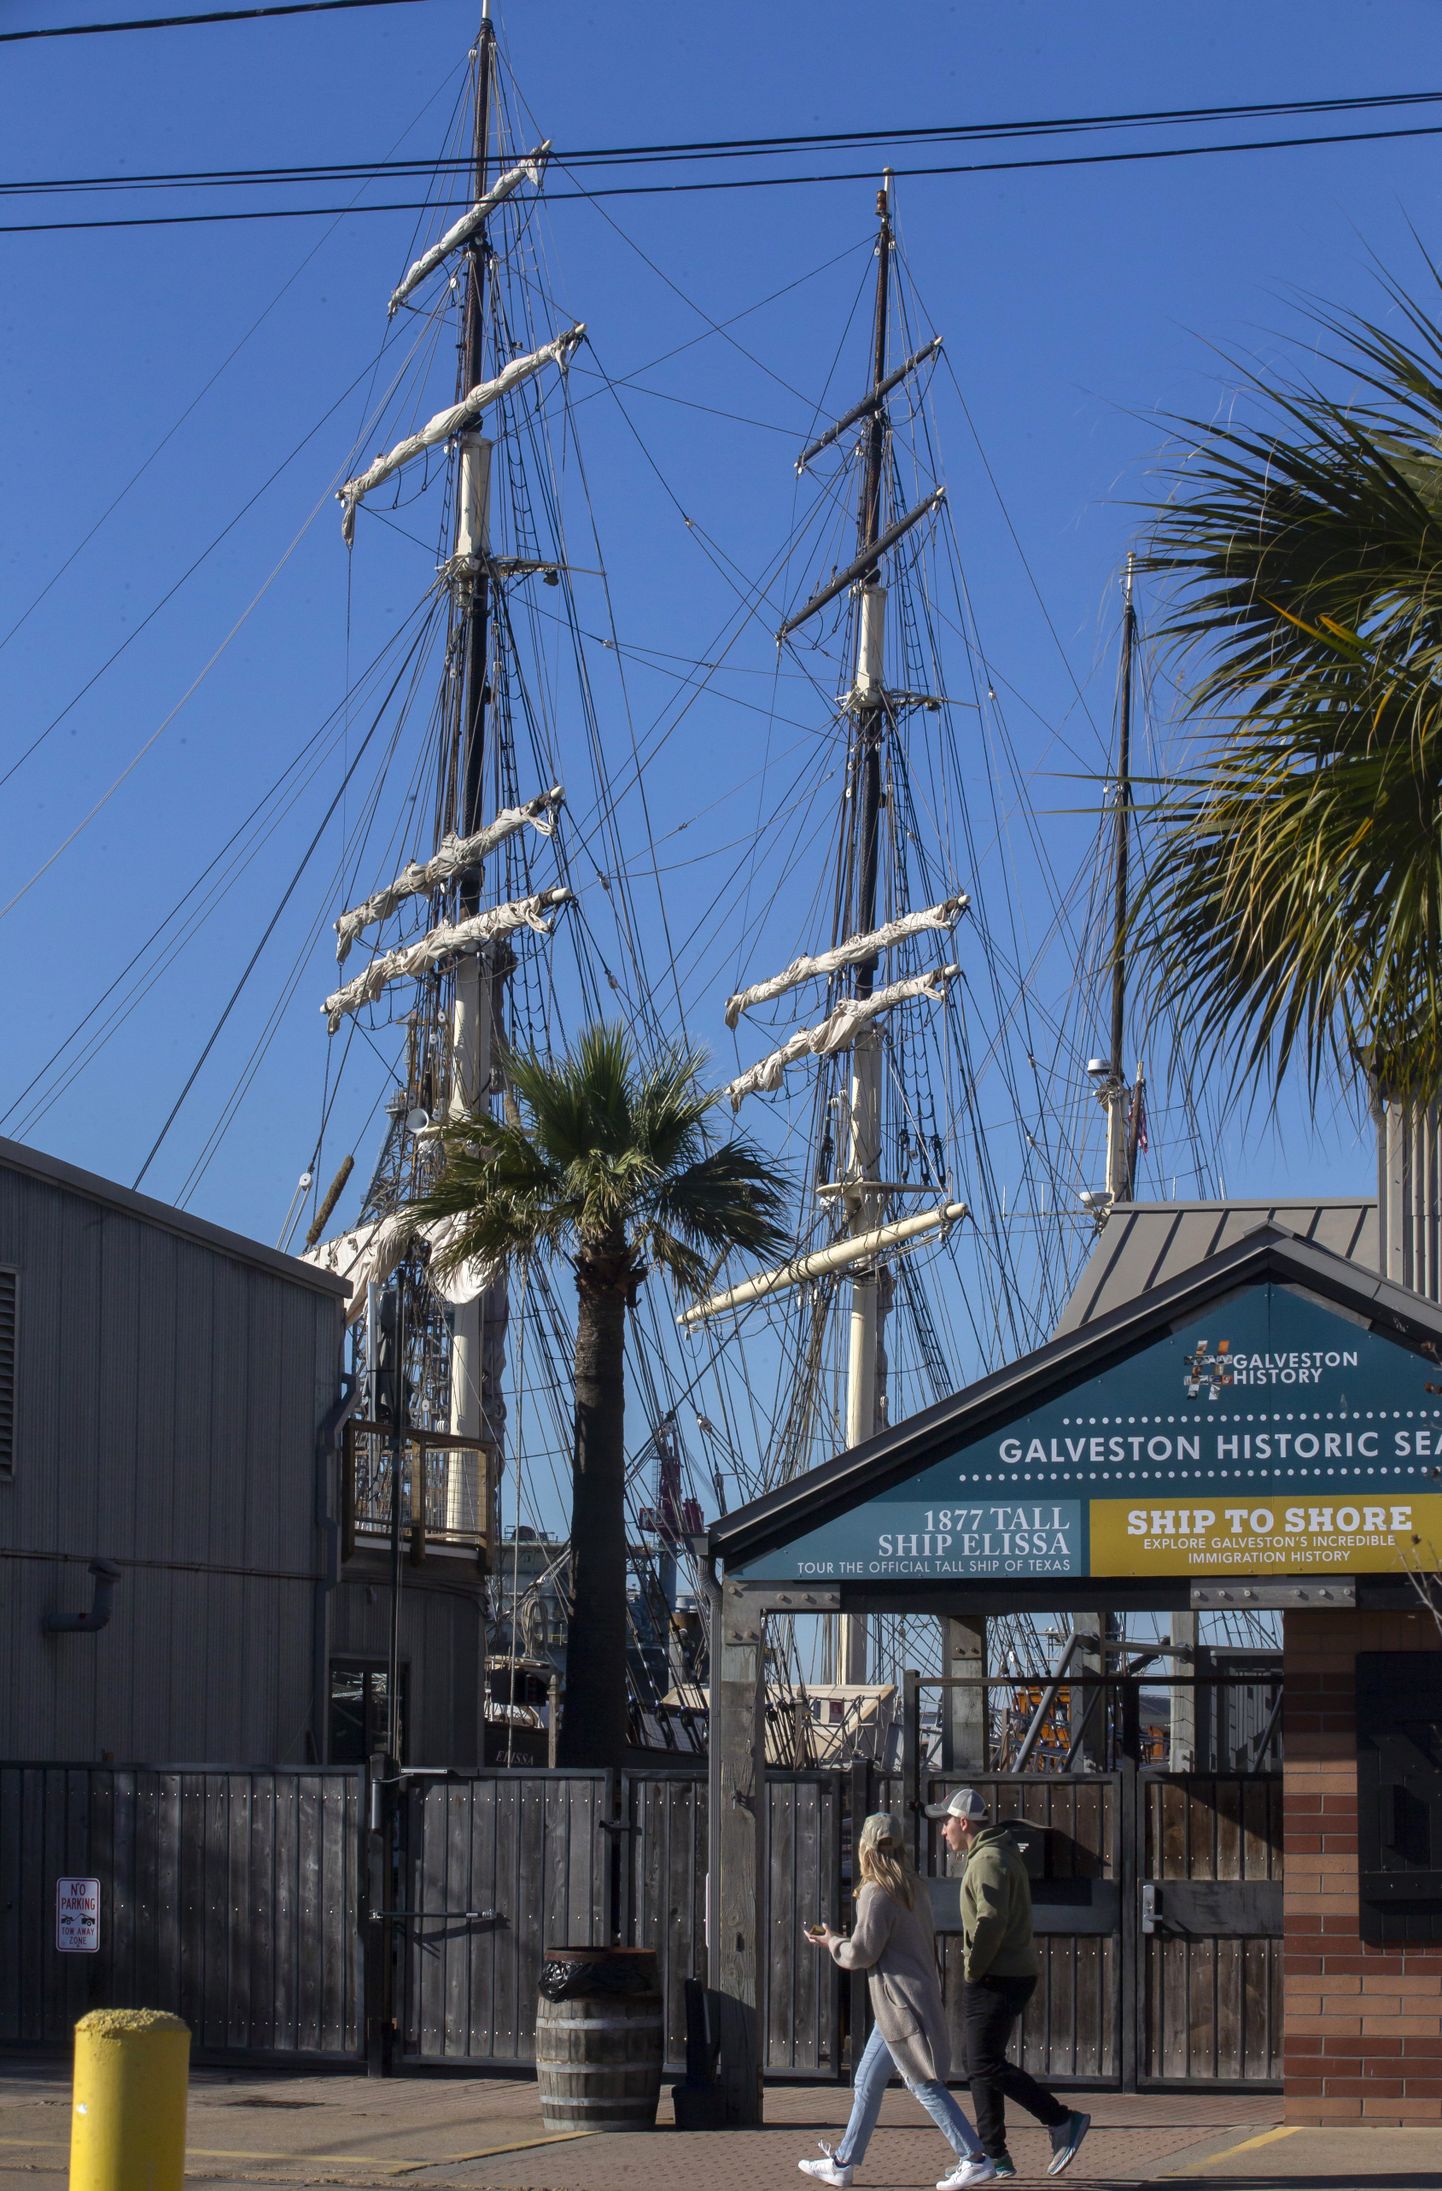 1877 aastal ehitatud kolmemastiline purjekas Elissa seisab muuseumi- ja õppelaevana Texase osariigis Galvestoni muuseumilaevasadamas.